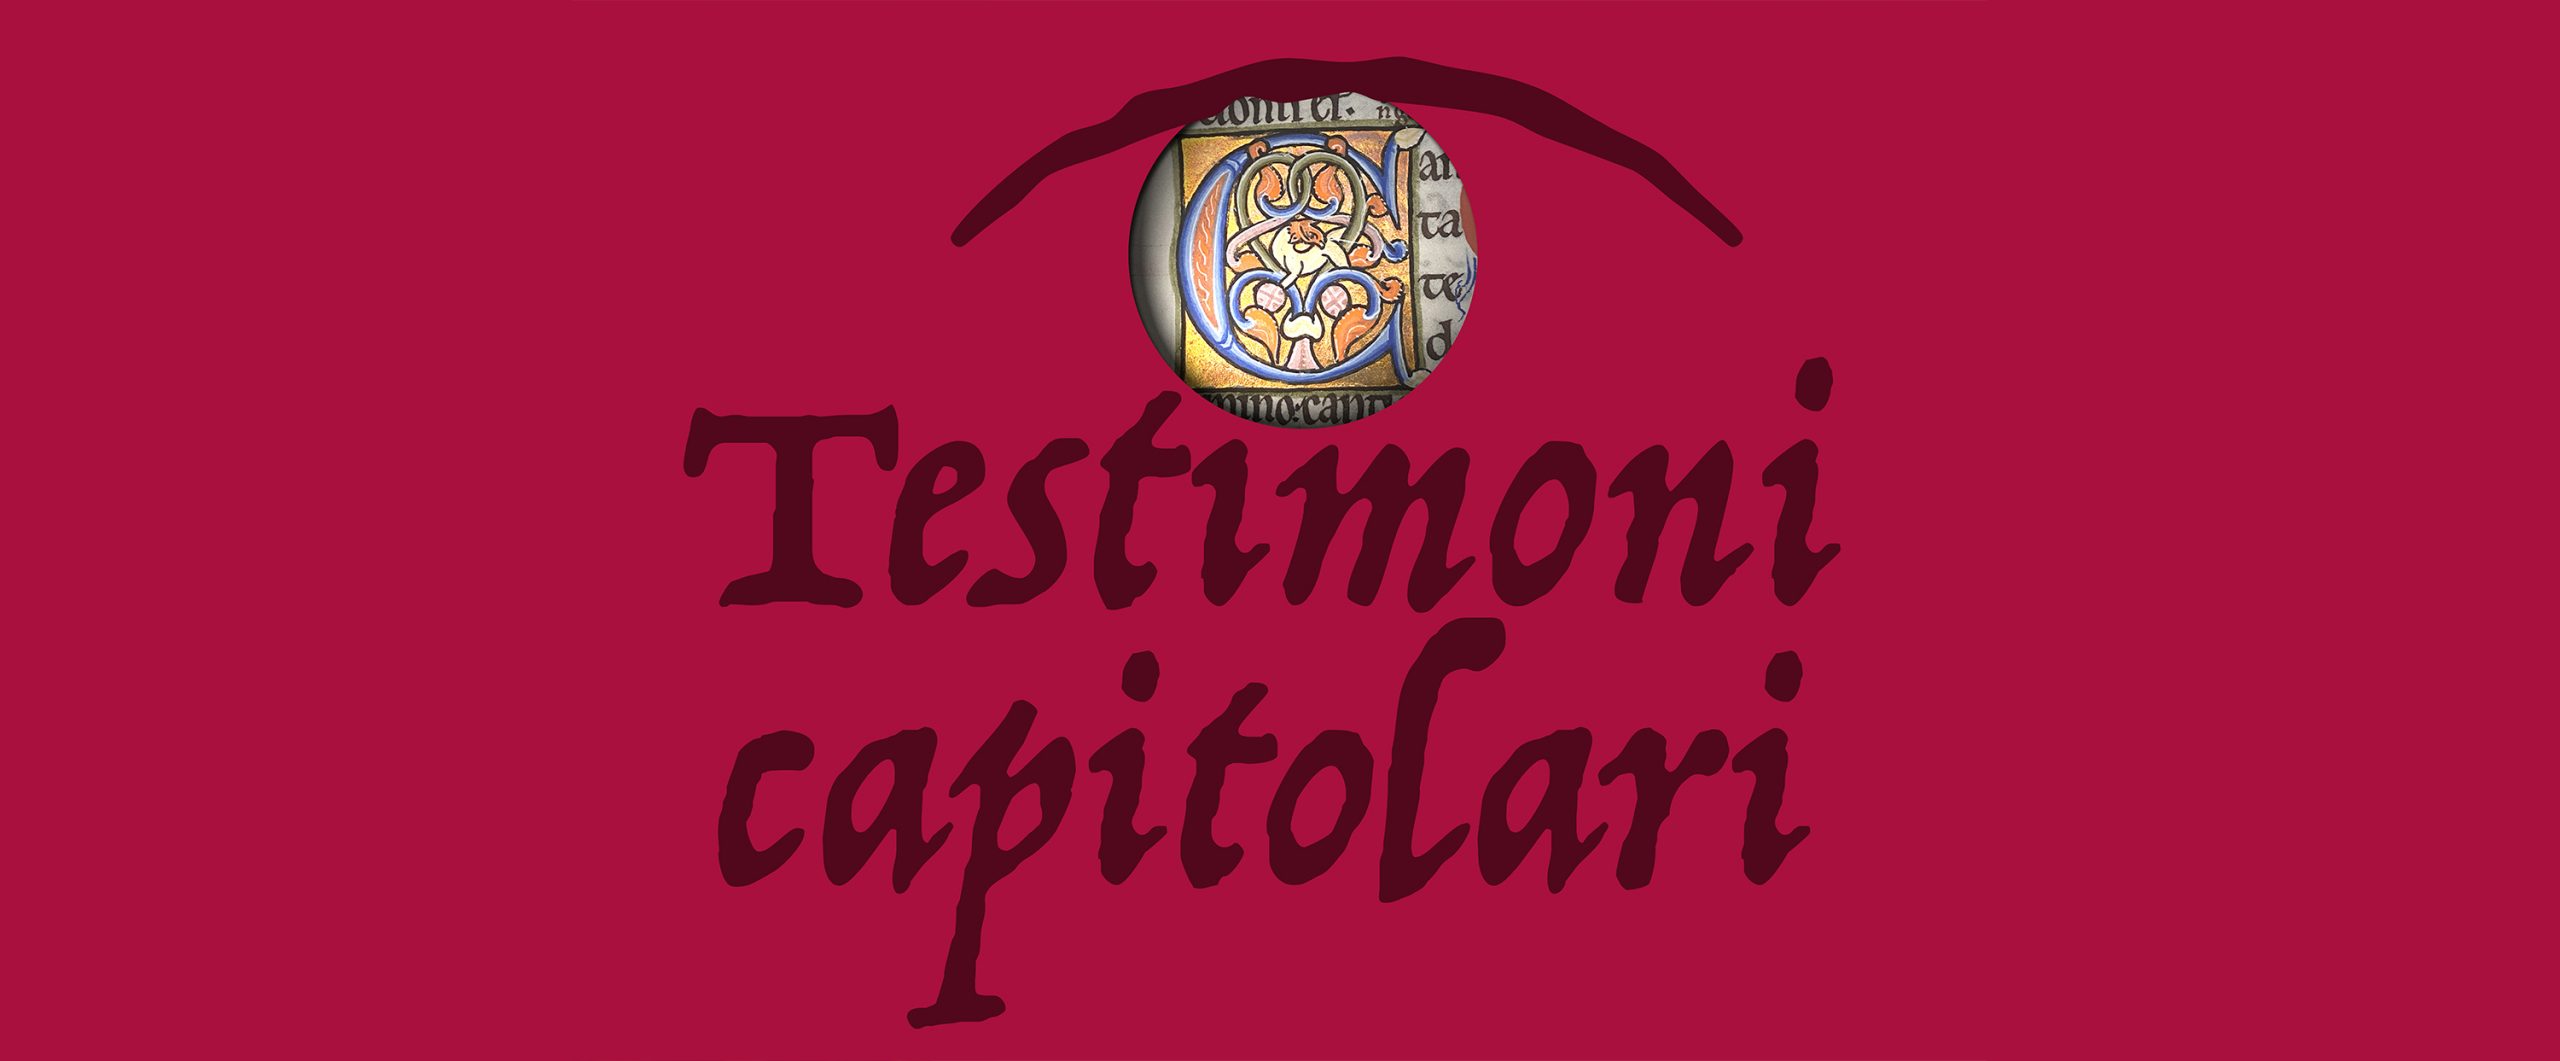 "Testimoni capitolari", esposizione fino al 21 dicembre 2022 presso il Museo del Tesoro del Duomo di Vercelli